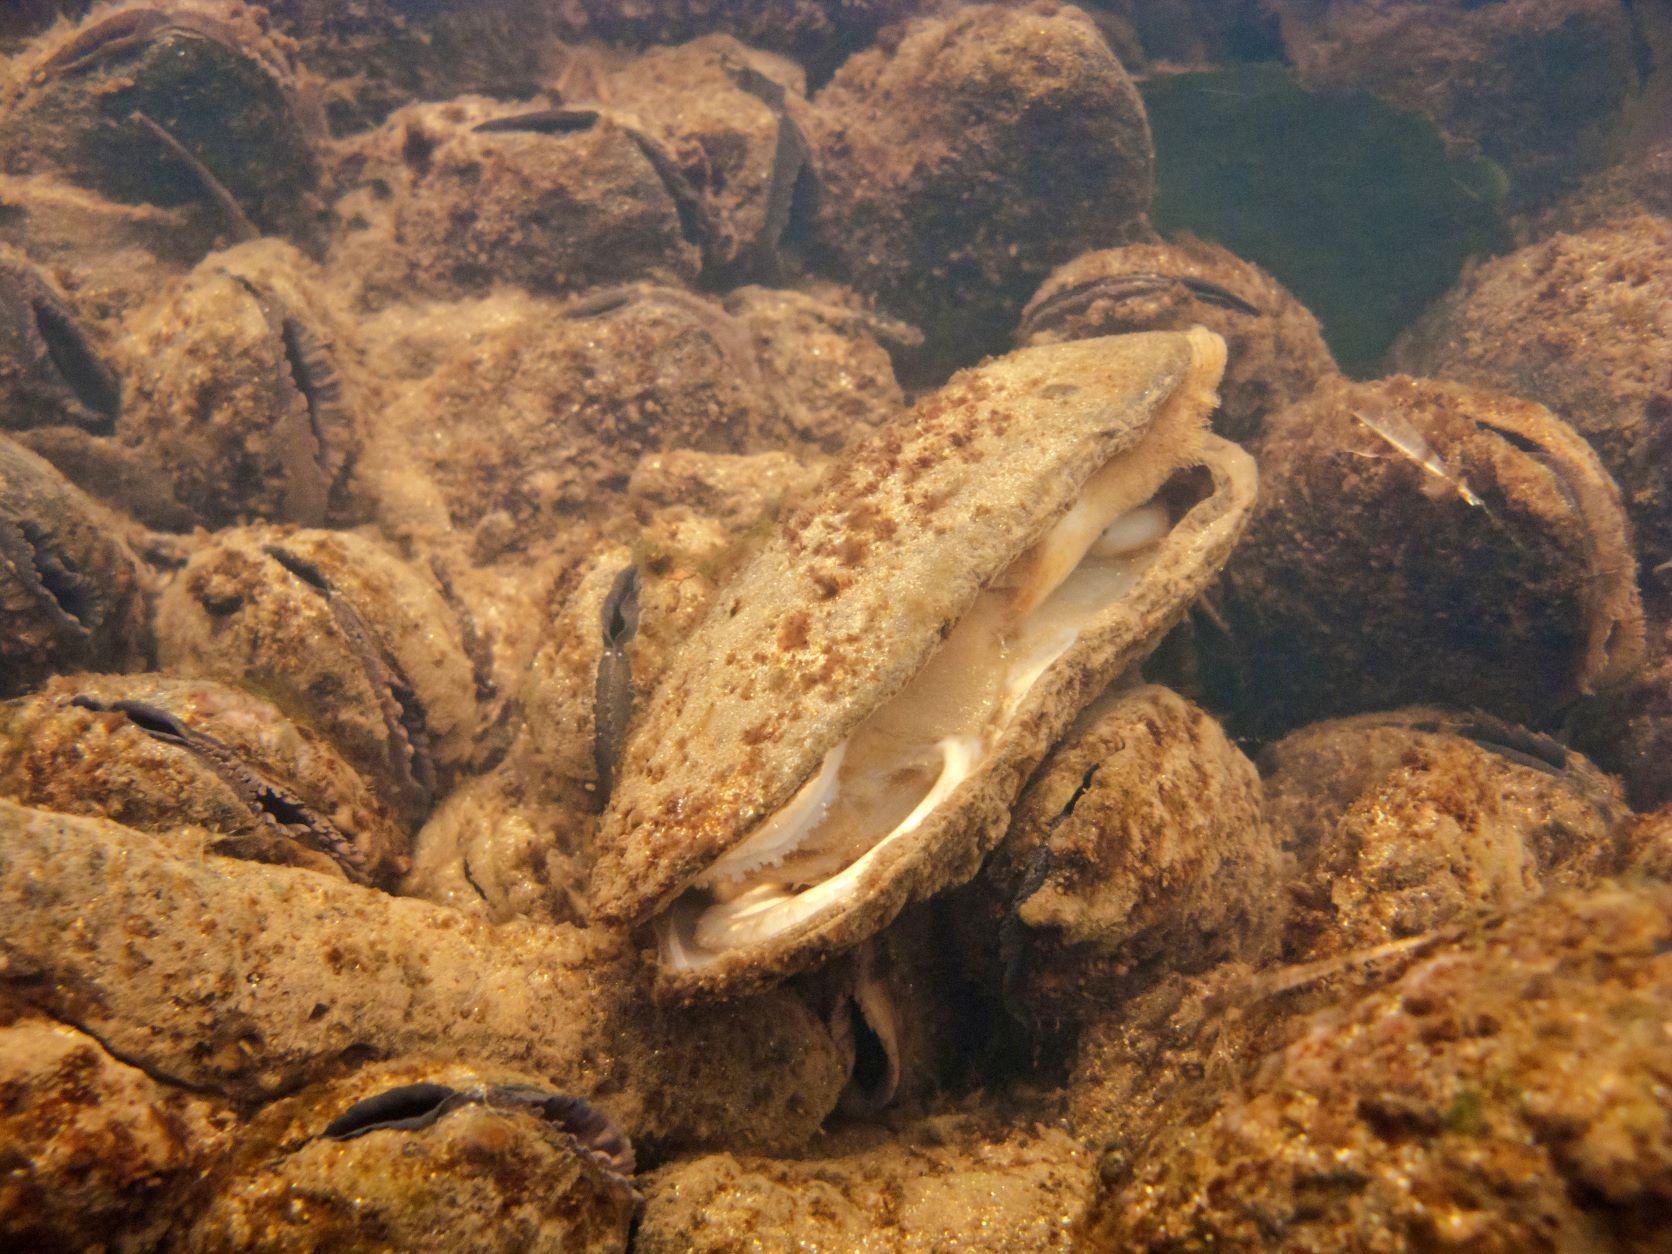 Flussperlmuscheln (Margaritifera margaritifera) sind vom Aussterben bedroht.